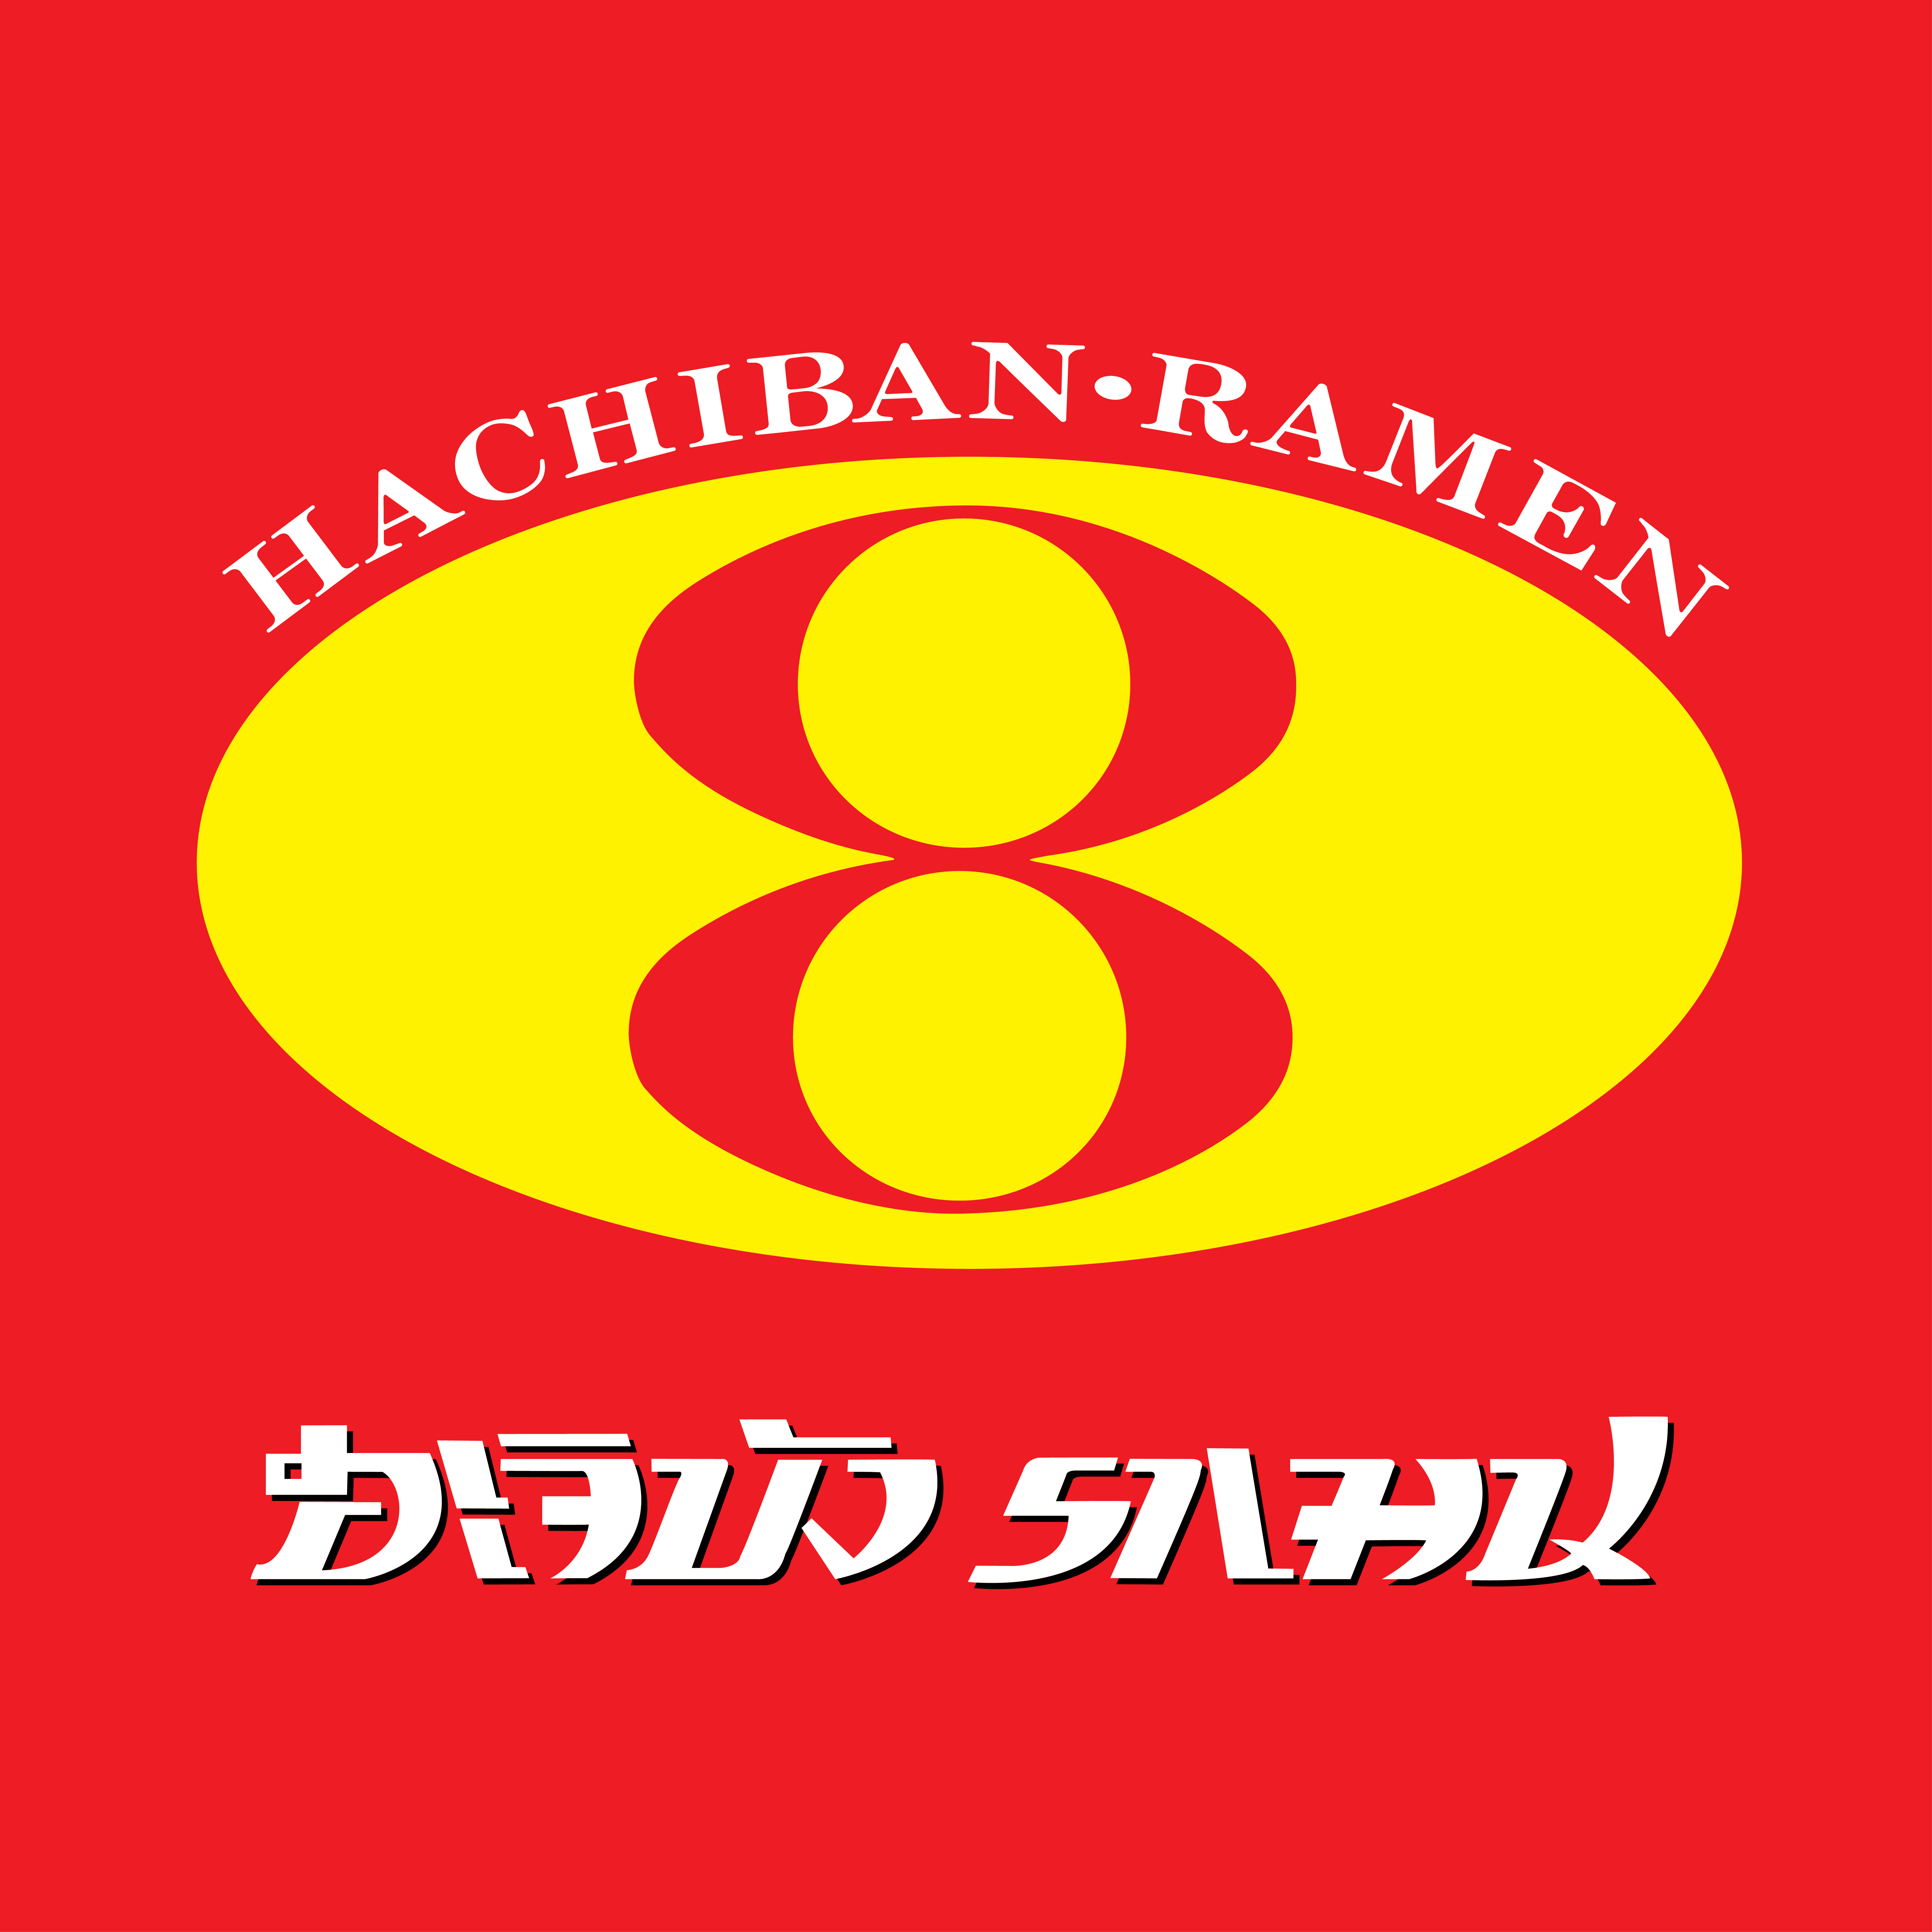 Hachiban Ramen